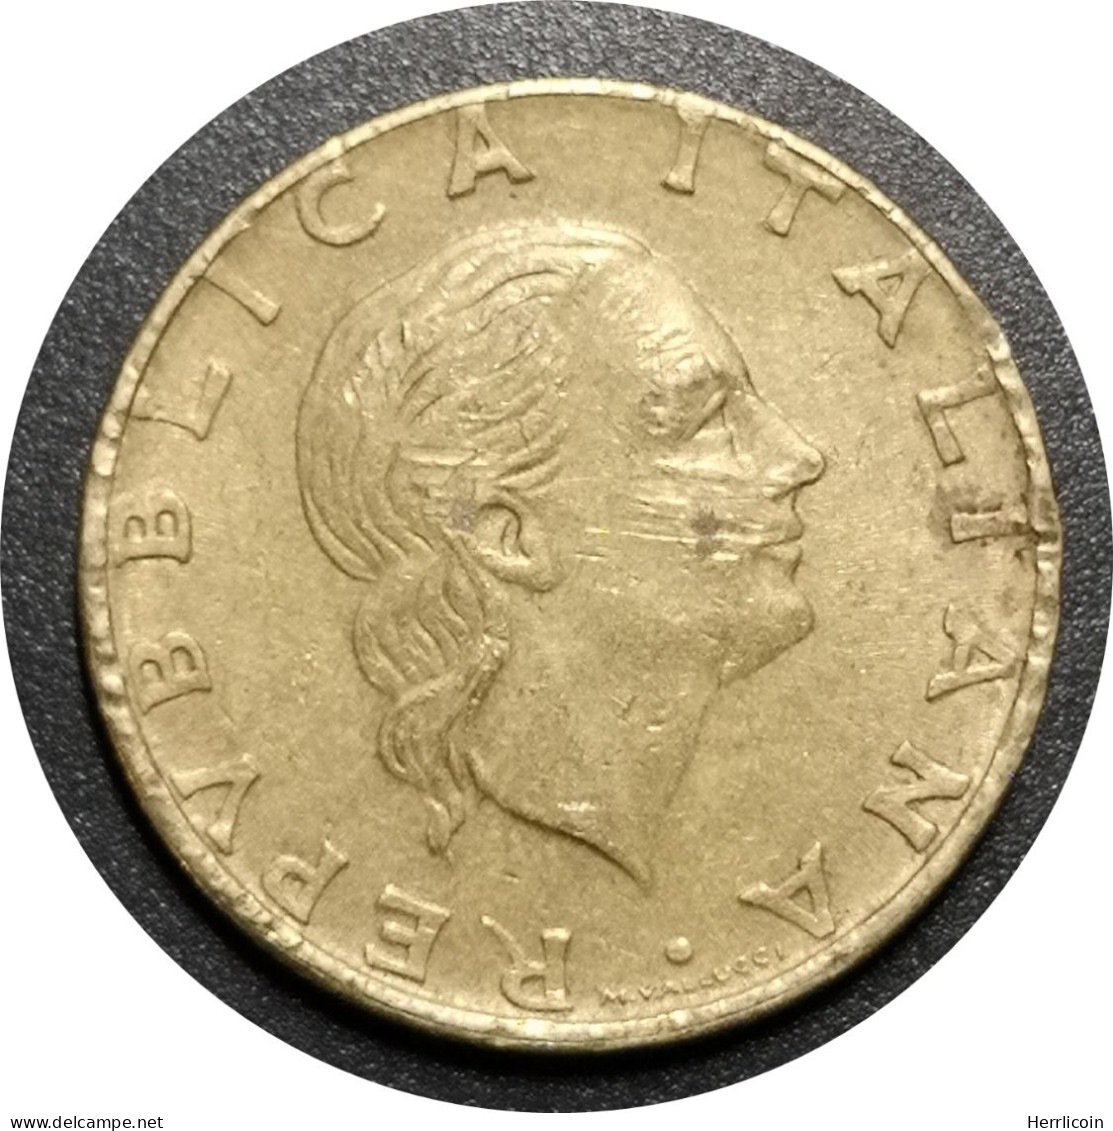 Monnaie Italie - 1986 Date épaisse - 200 Lire - 200 Lire